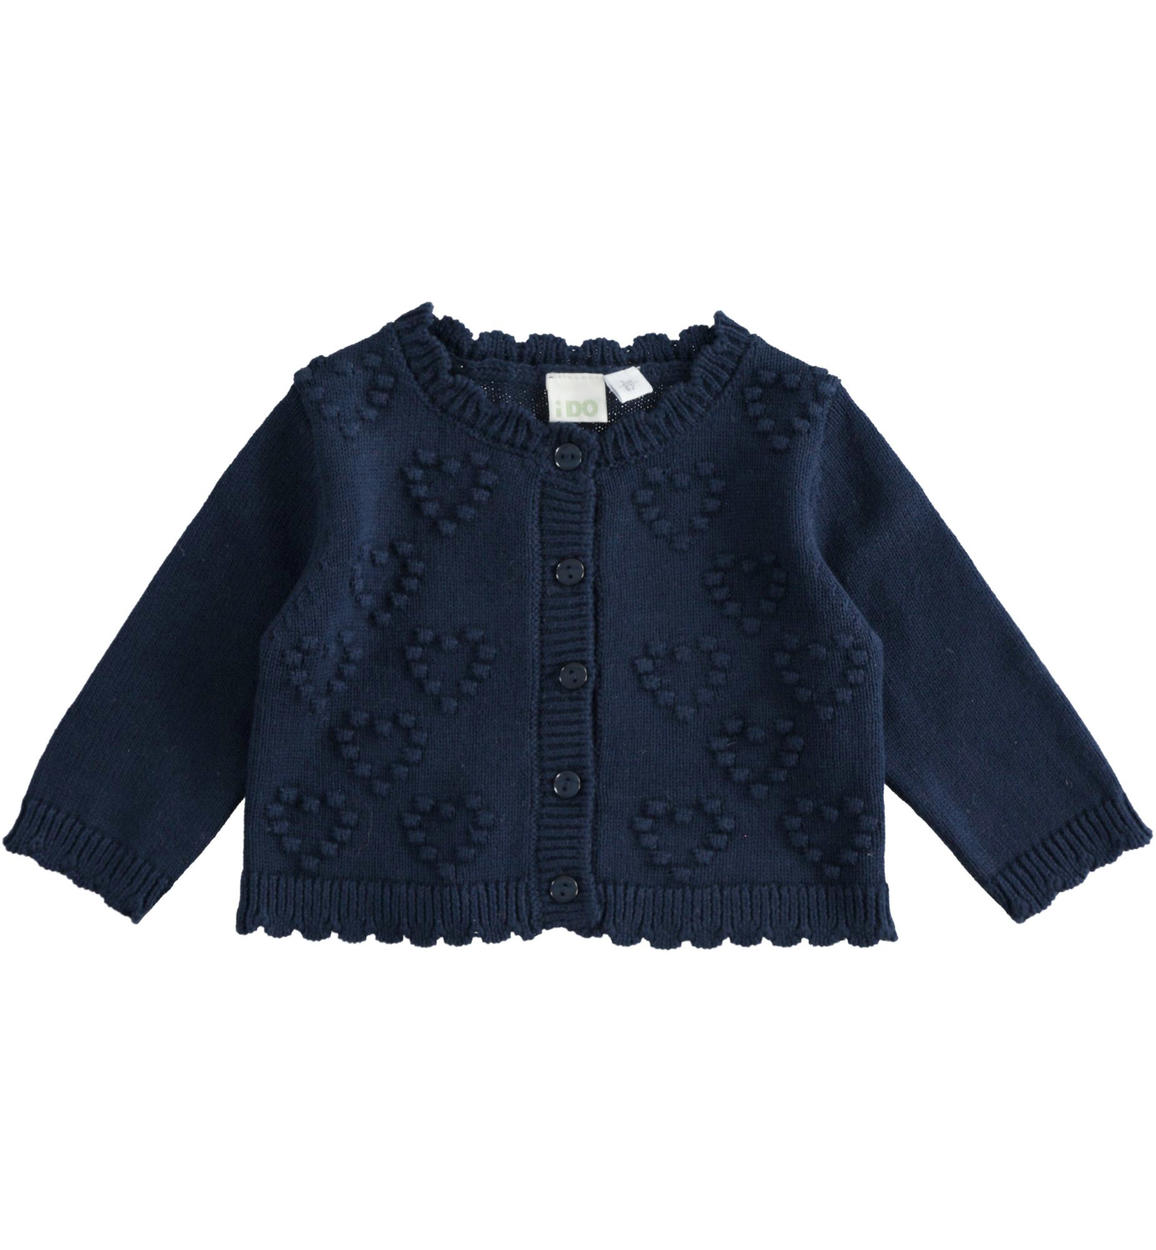 Cardigan neonata con cuori in tricot 100% cotone BLU iDO